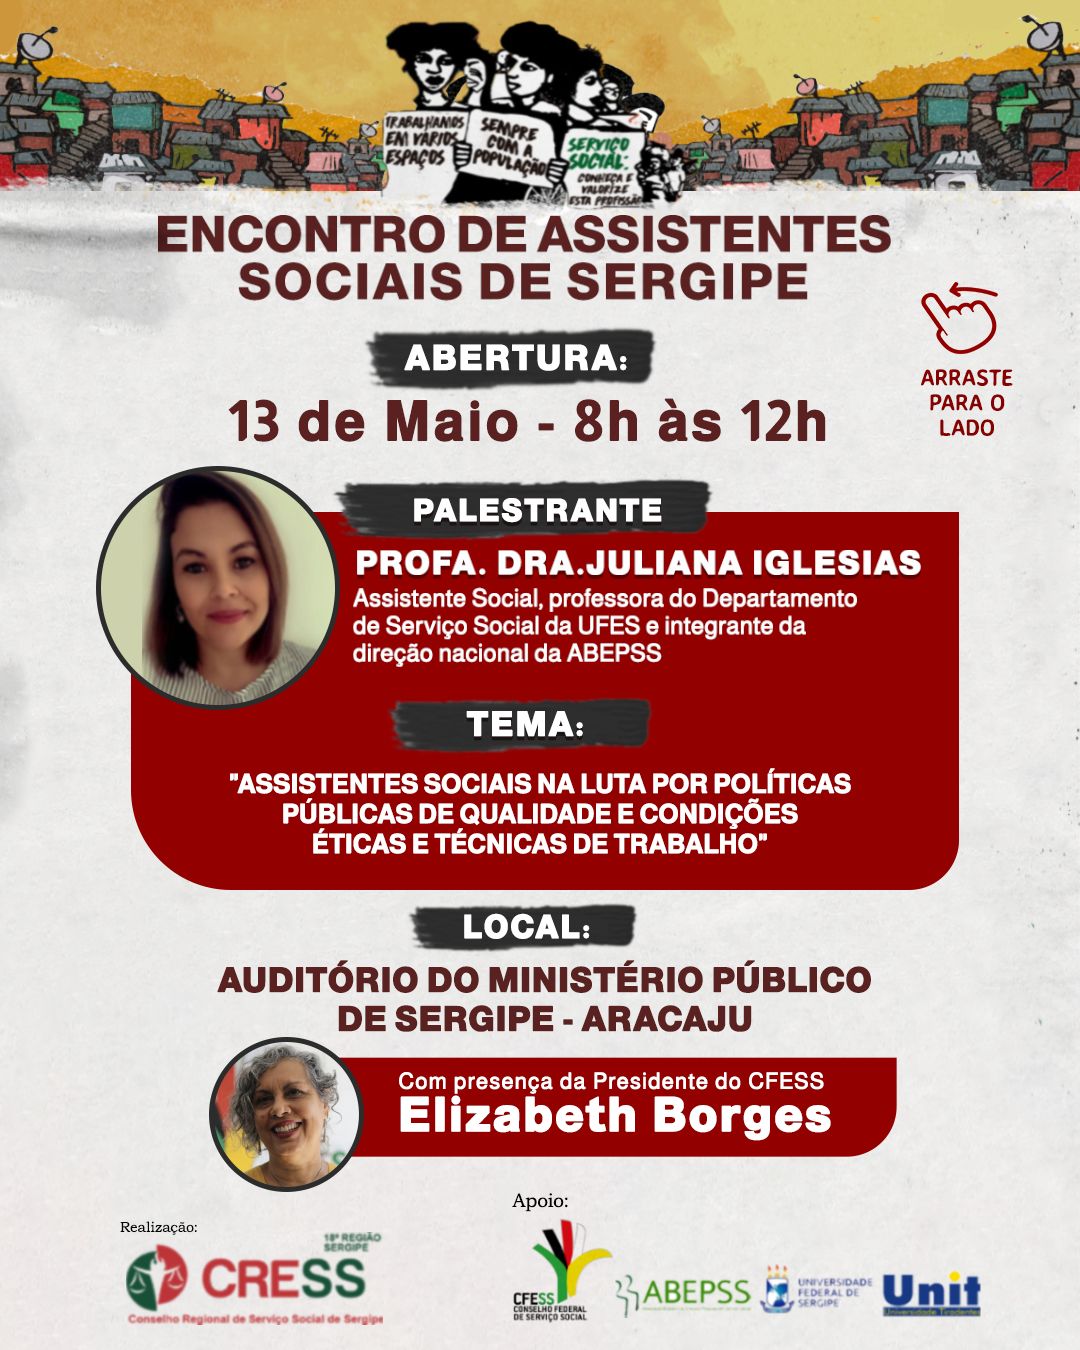 Encontro de Assistentes Sociais de Sergipe inicia nesta sexta (13) em Aracaju; confira programação